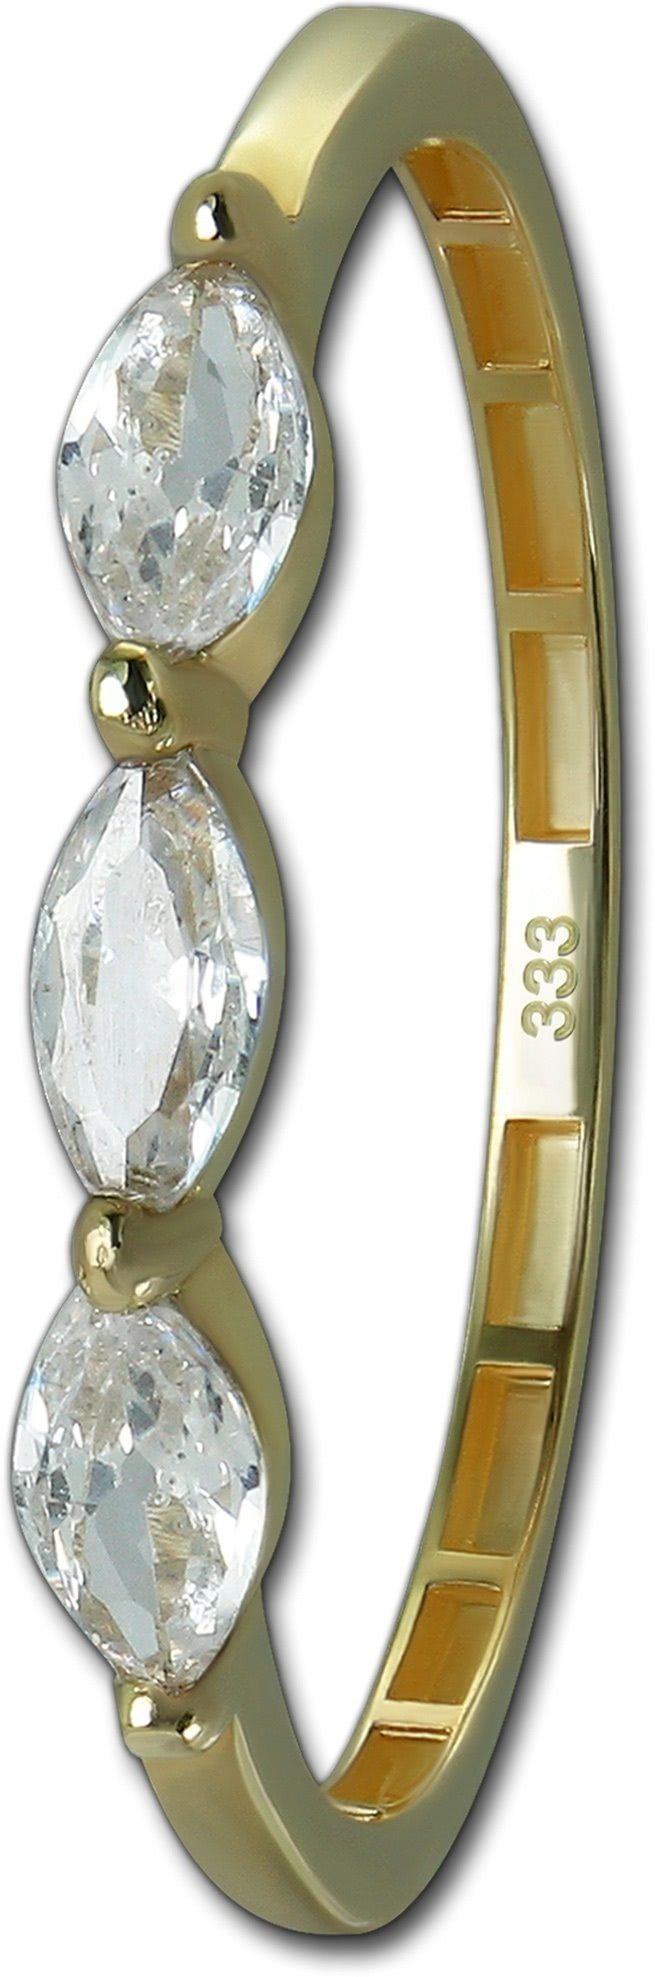 GoldDream Goldring GoldDream Gold Ring Shine Gr.60 (Fingerring), Damen Ring Echtgold, 333er Gelbgold gold, weiß Shine